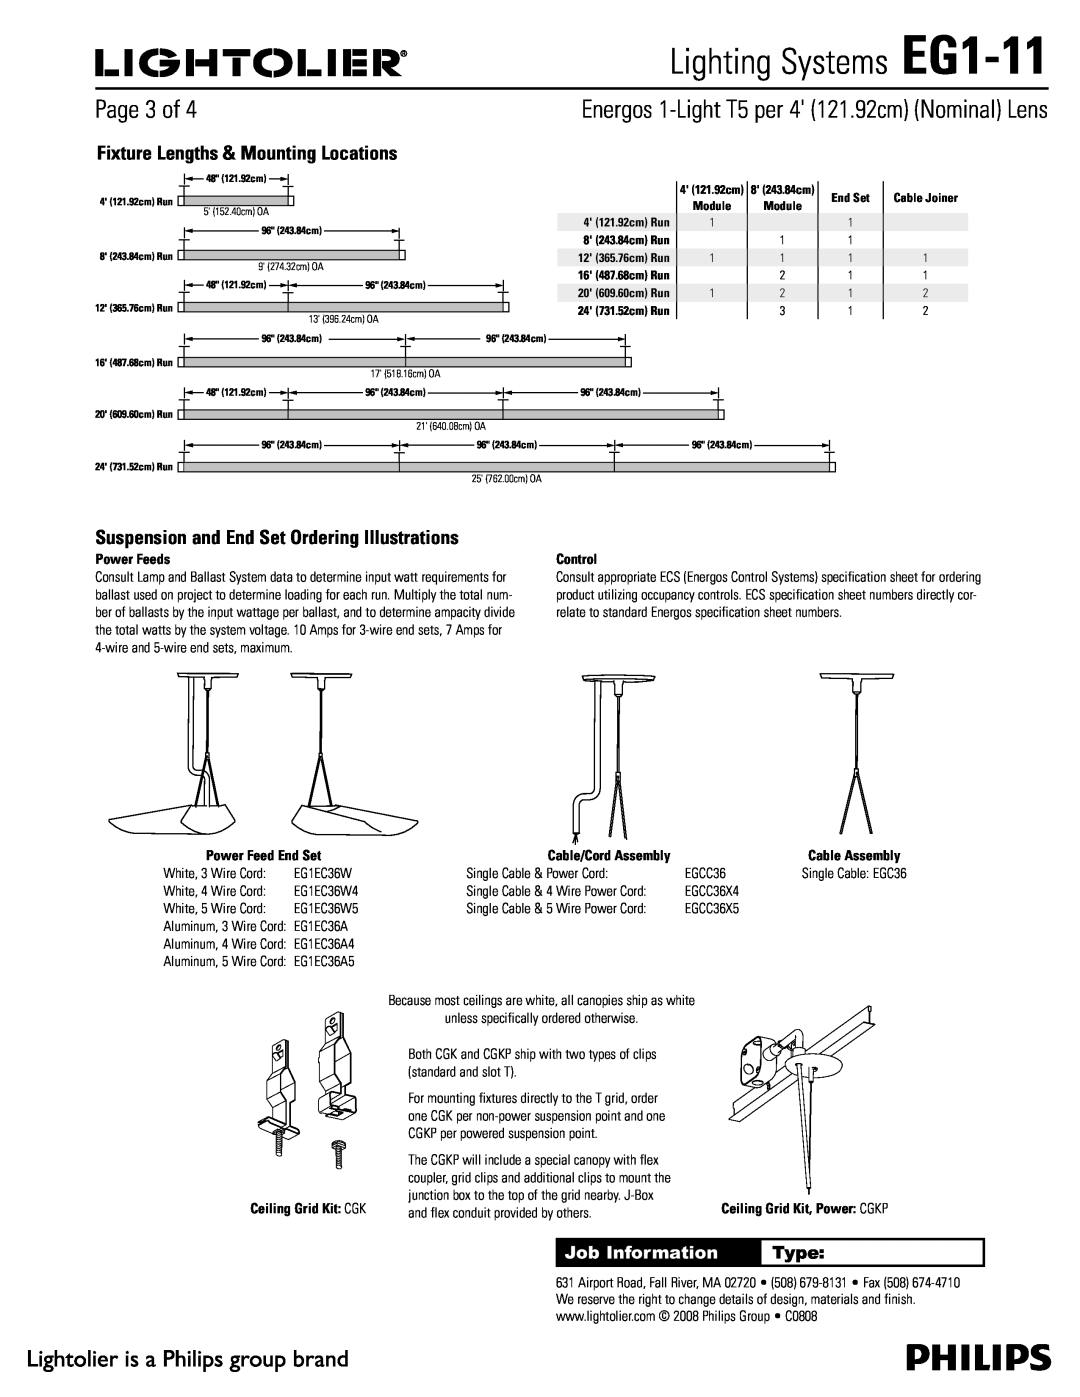 Lightolier Lighting Systems EG1-11, 1BHFPG, Job Information, Type, Ceiling Grid Kit $, 4 121.92cm Run, End Set 